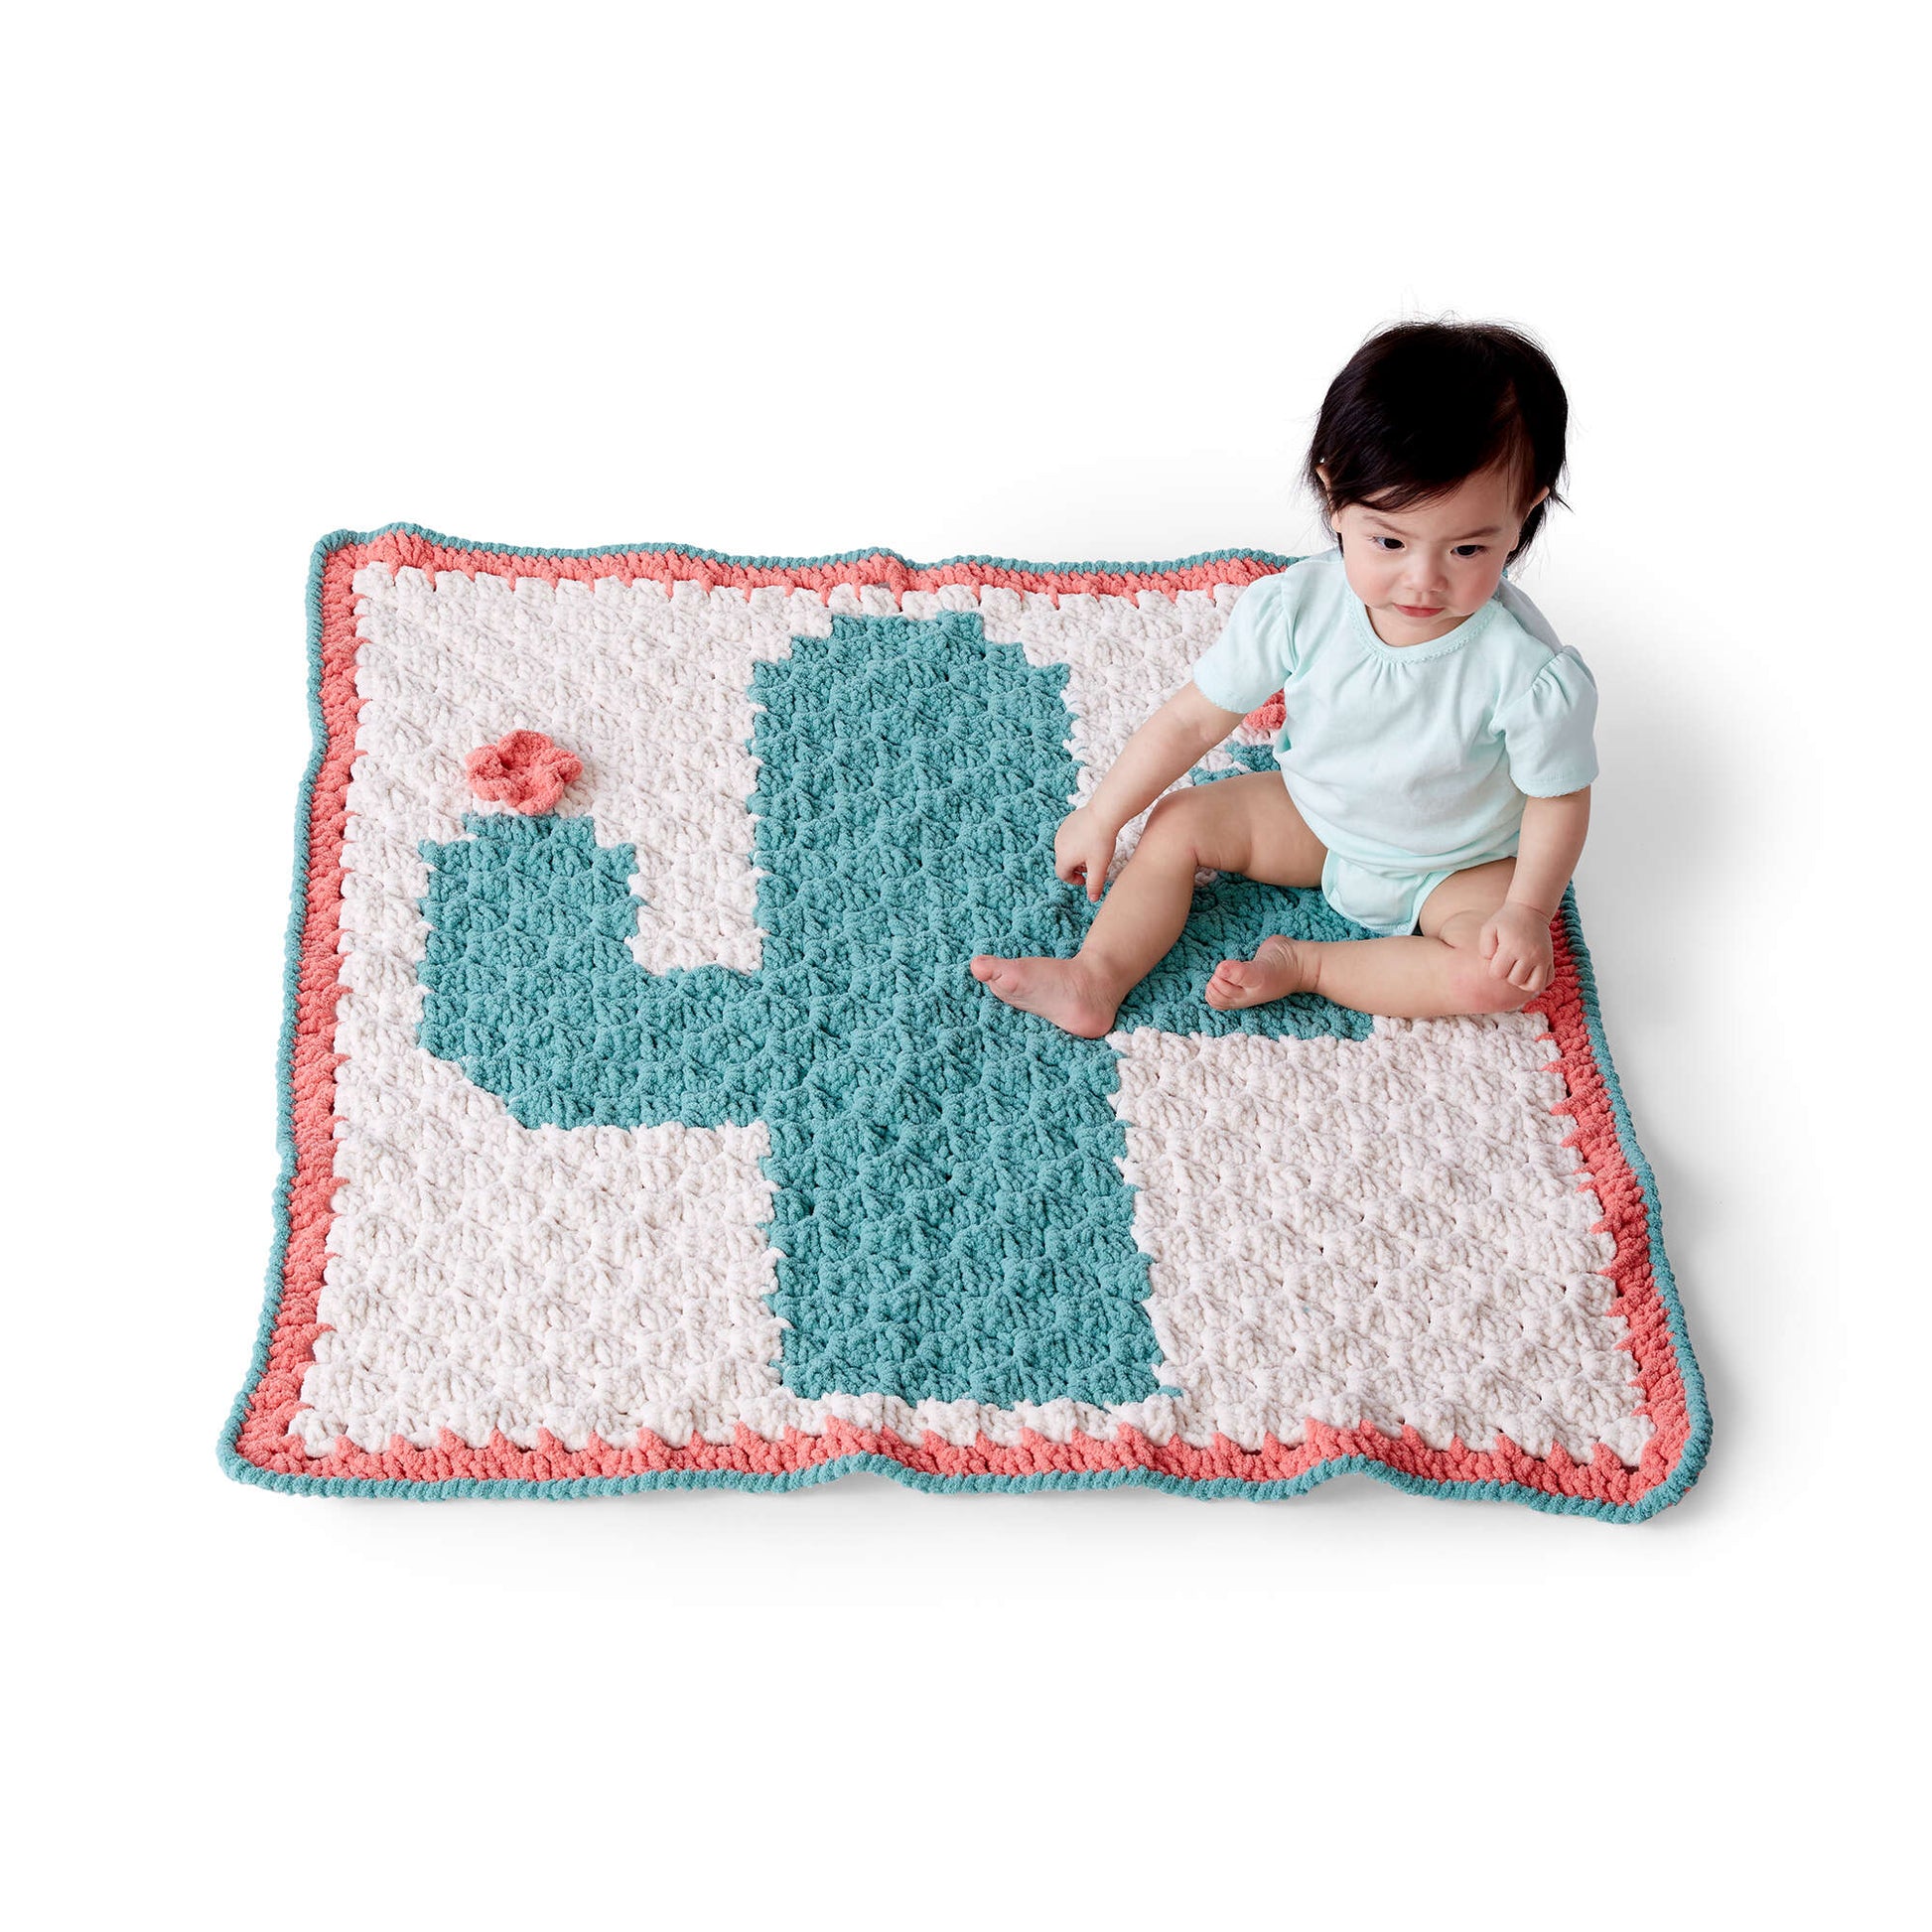 Bernat Corner To Corner Crochet Cactus Blanket Crochet Blanket made in Bernat Baby Blanket yarn